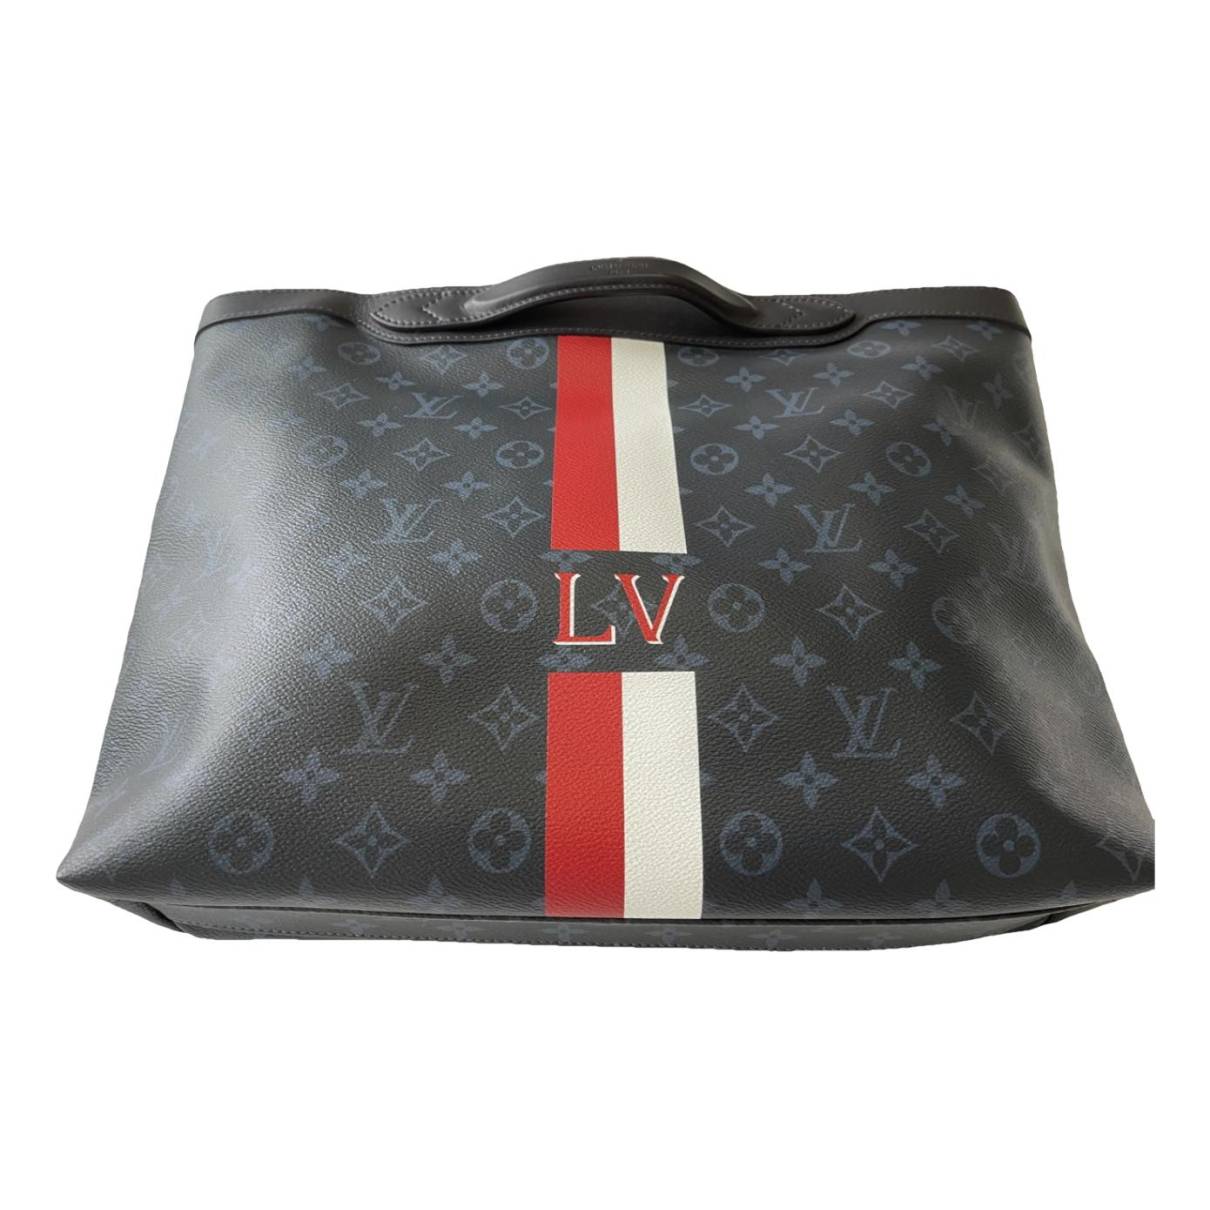 grey LOUIS VUITTON Women Handbags - Vestiaire Collective